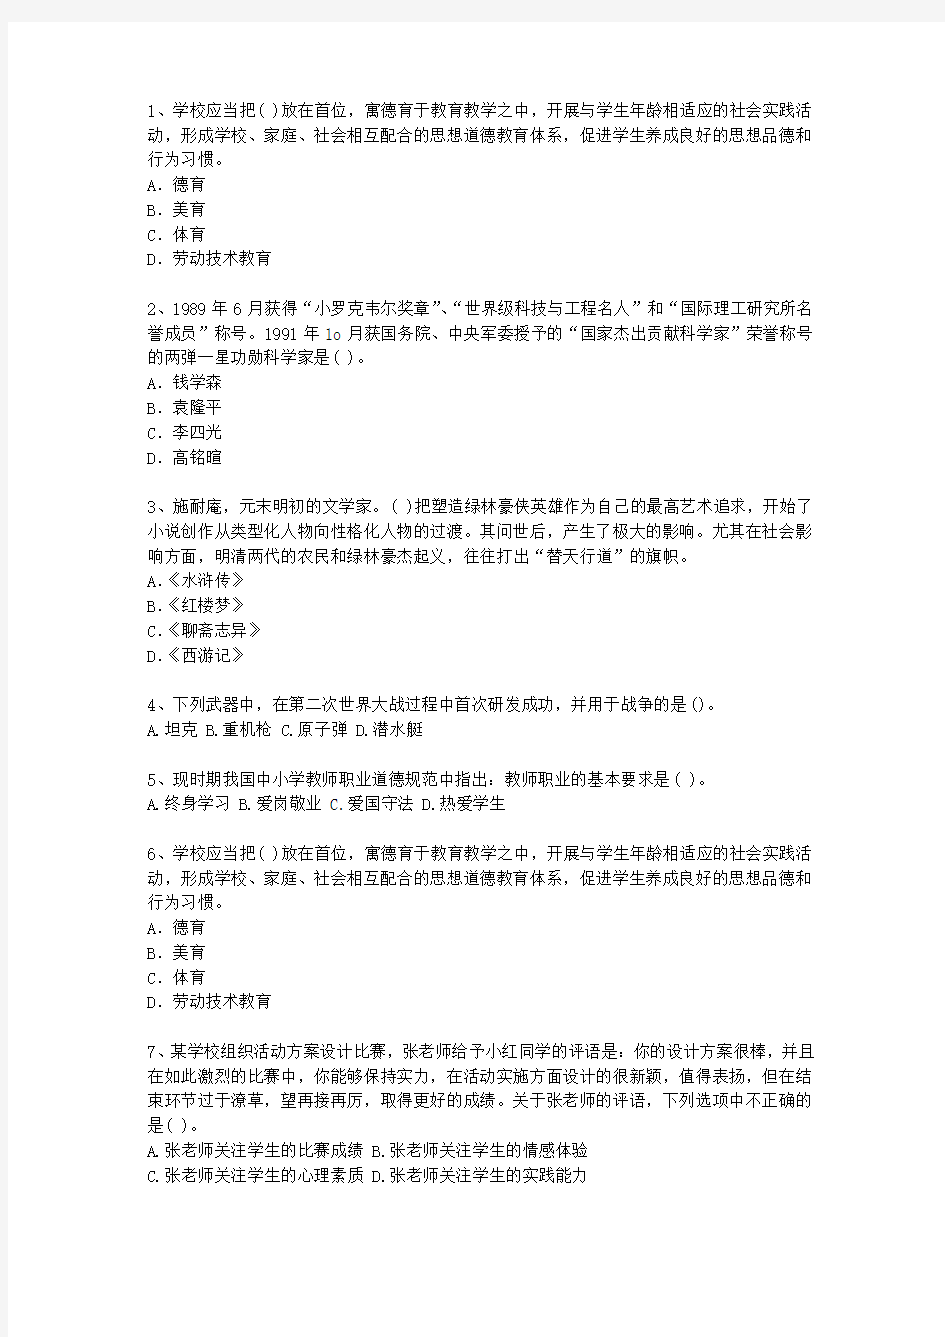 2010河南省教师资格证考试《综合素质》考试技巧、答题原则